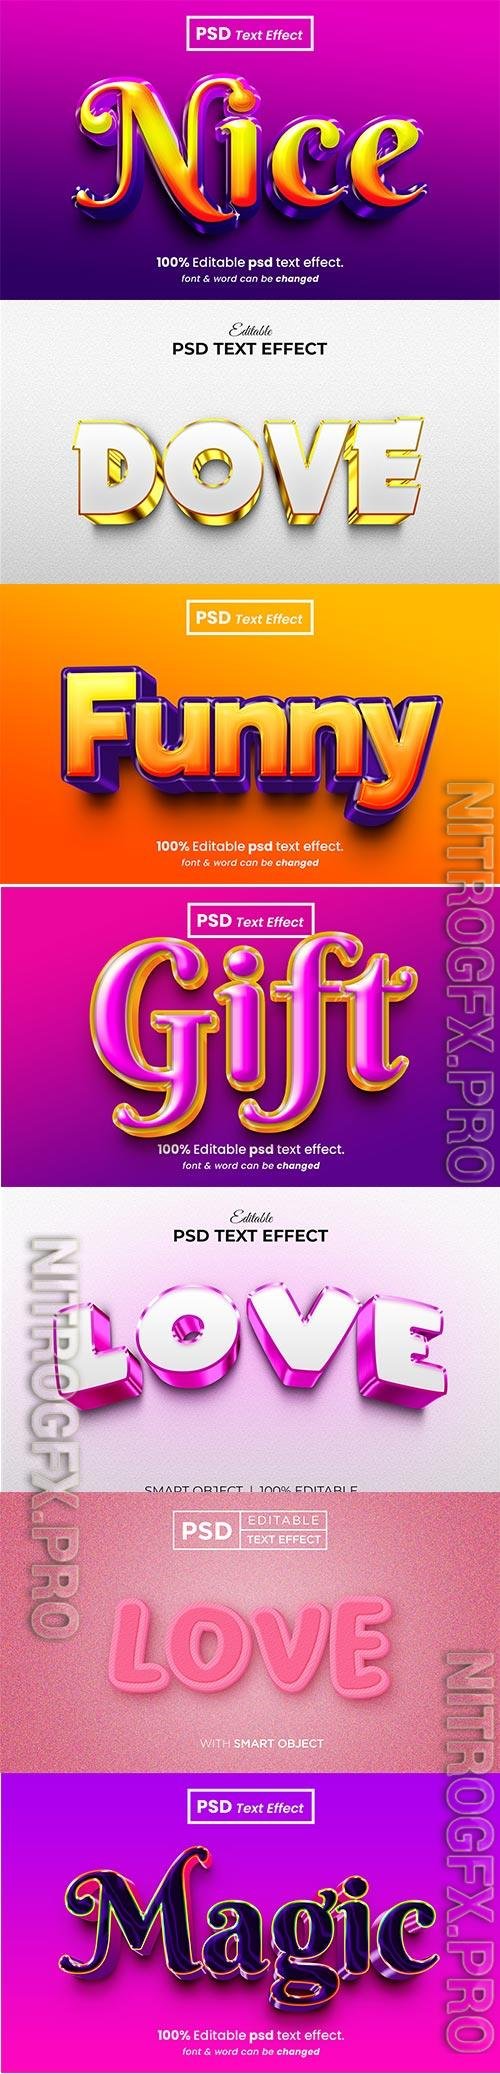 Psd text effect set vol 159